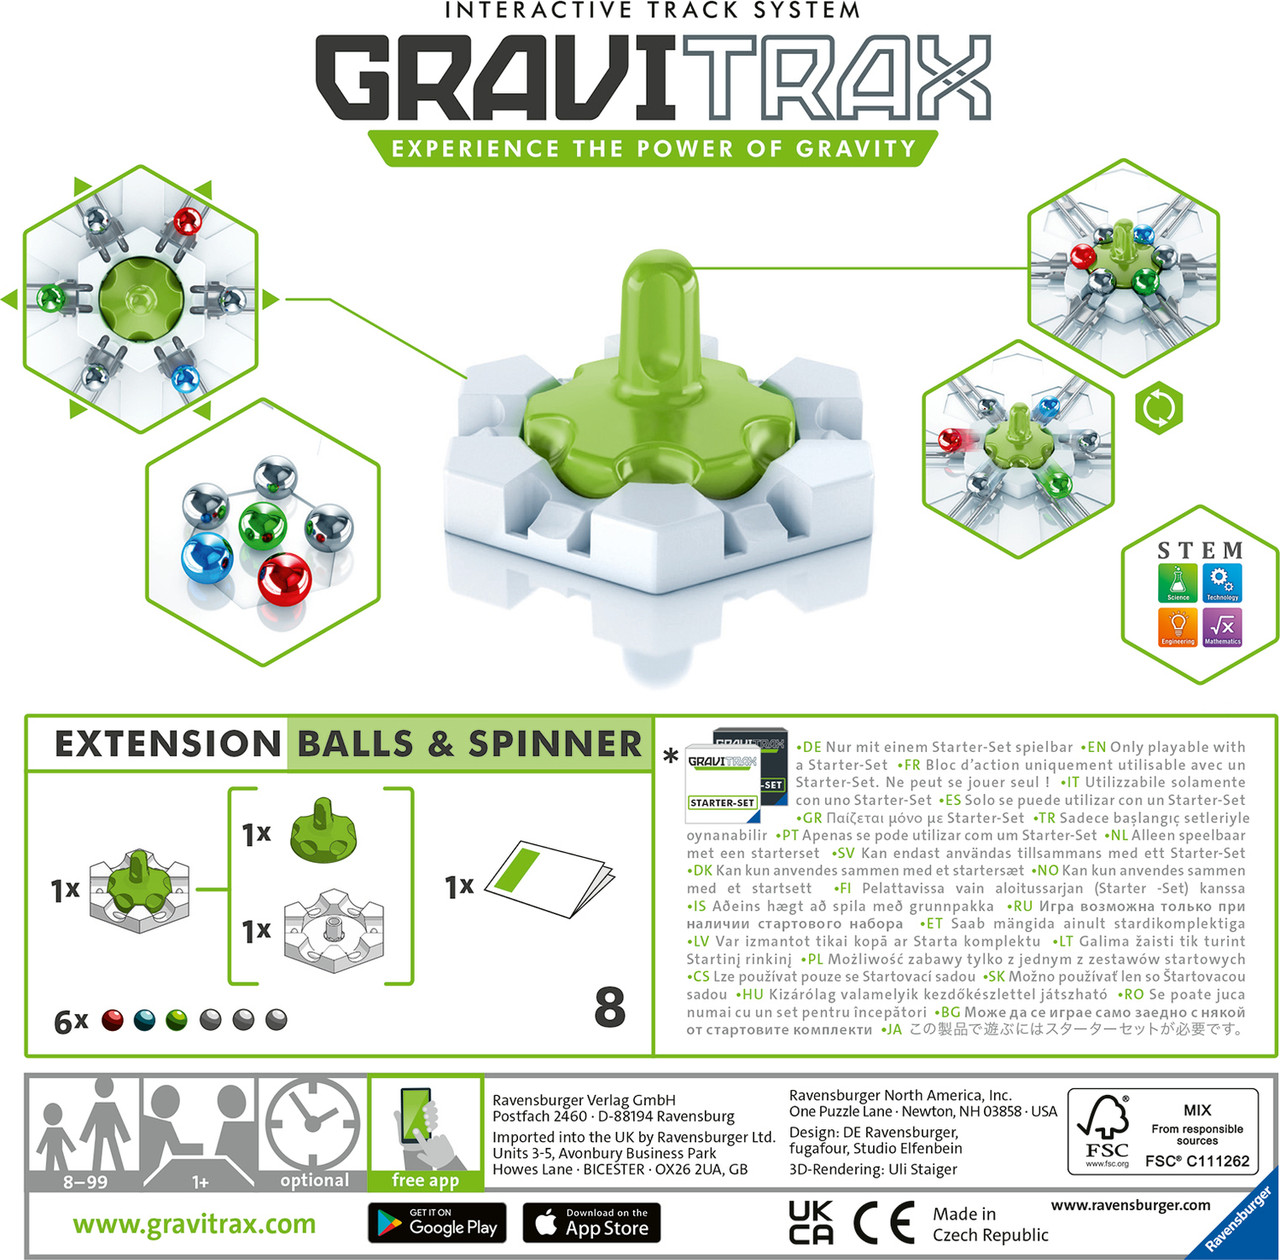 Gravitrax: Balls & Spinner